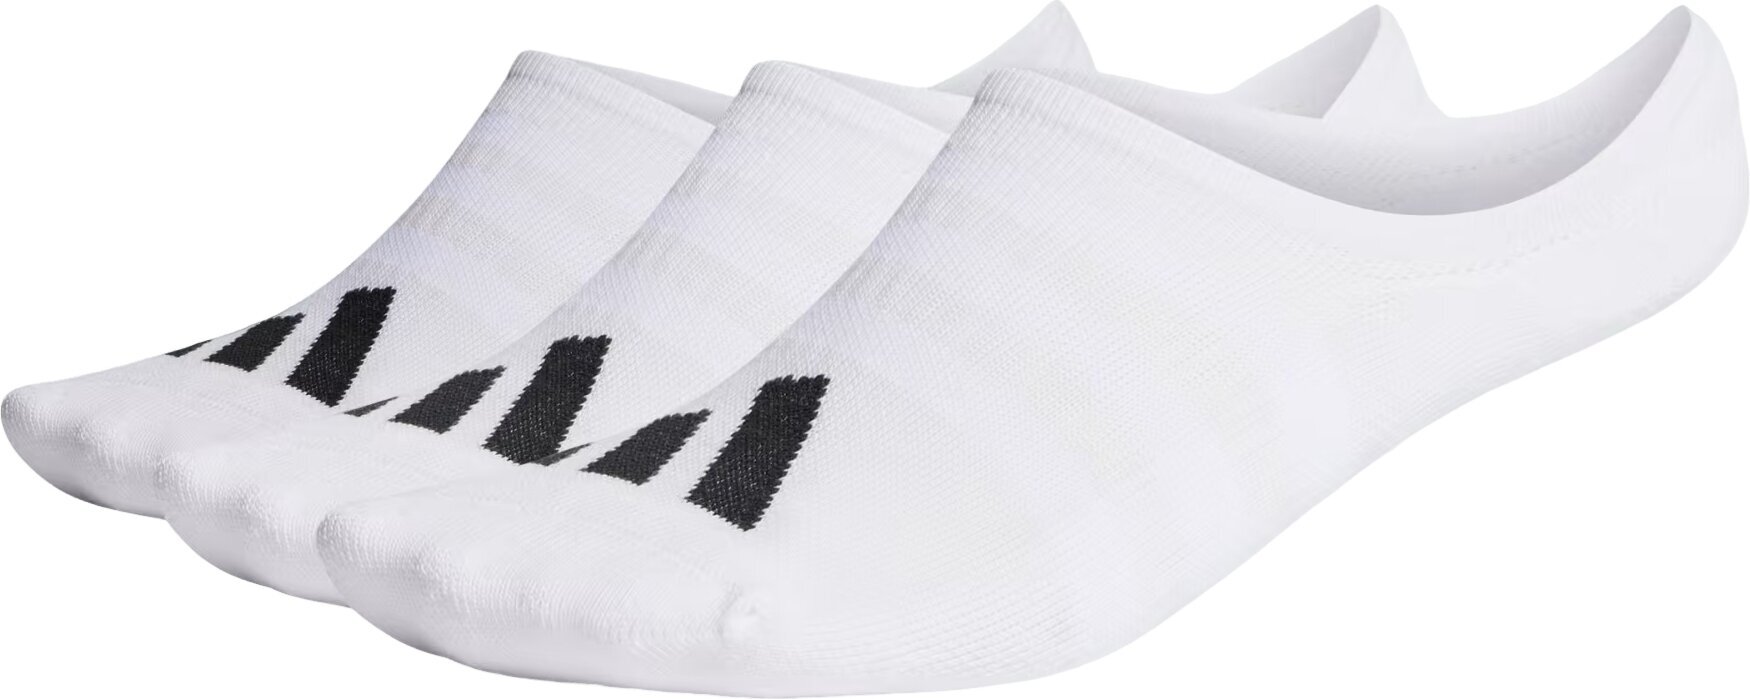 Skarpety Adidas No Show Golf Socks 3-Pairs Skarpety White 40-42